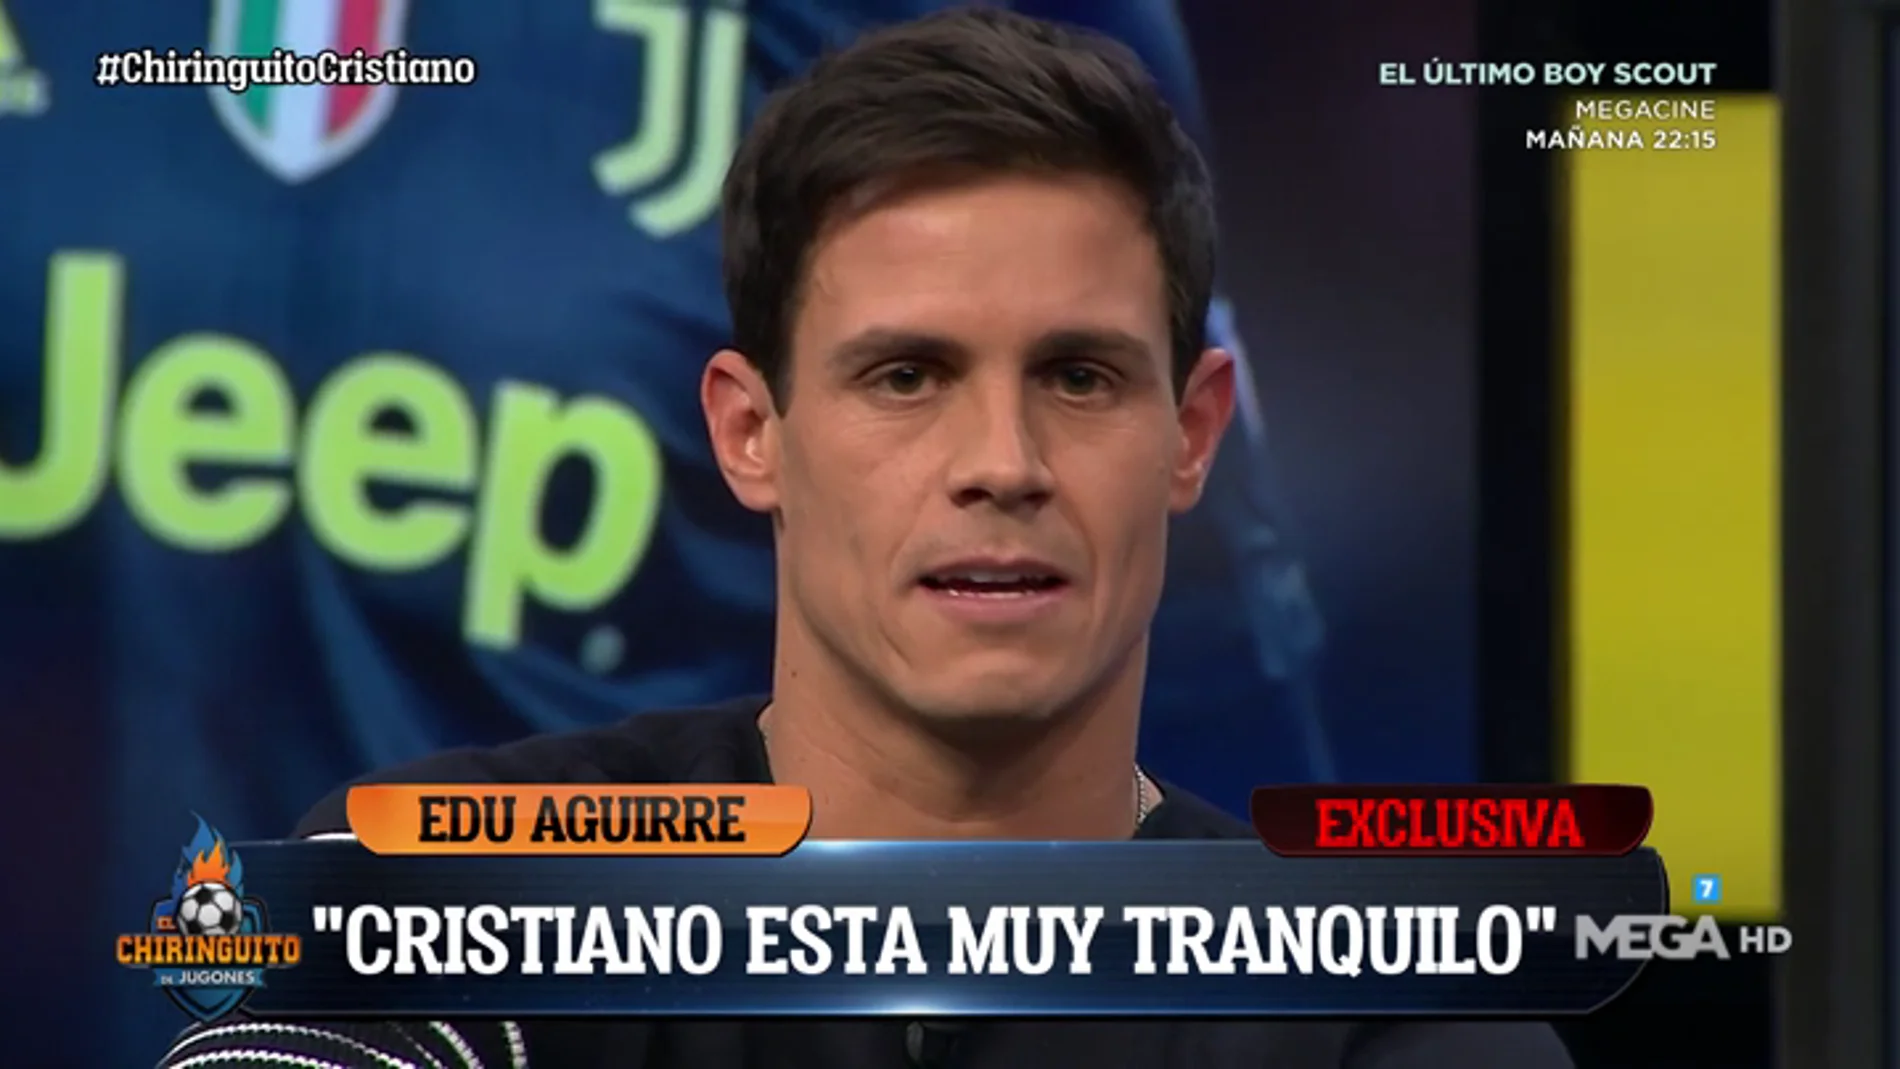 Edu Aguirre: "Cristiano está tranquilo, está seguro que van a remontar"